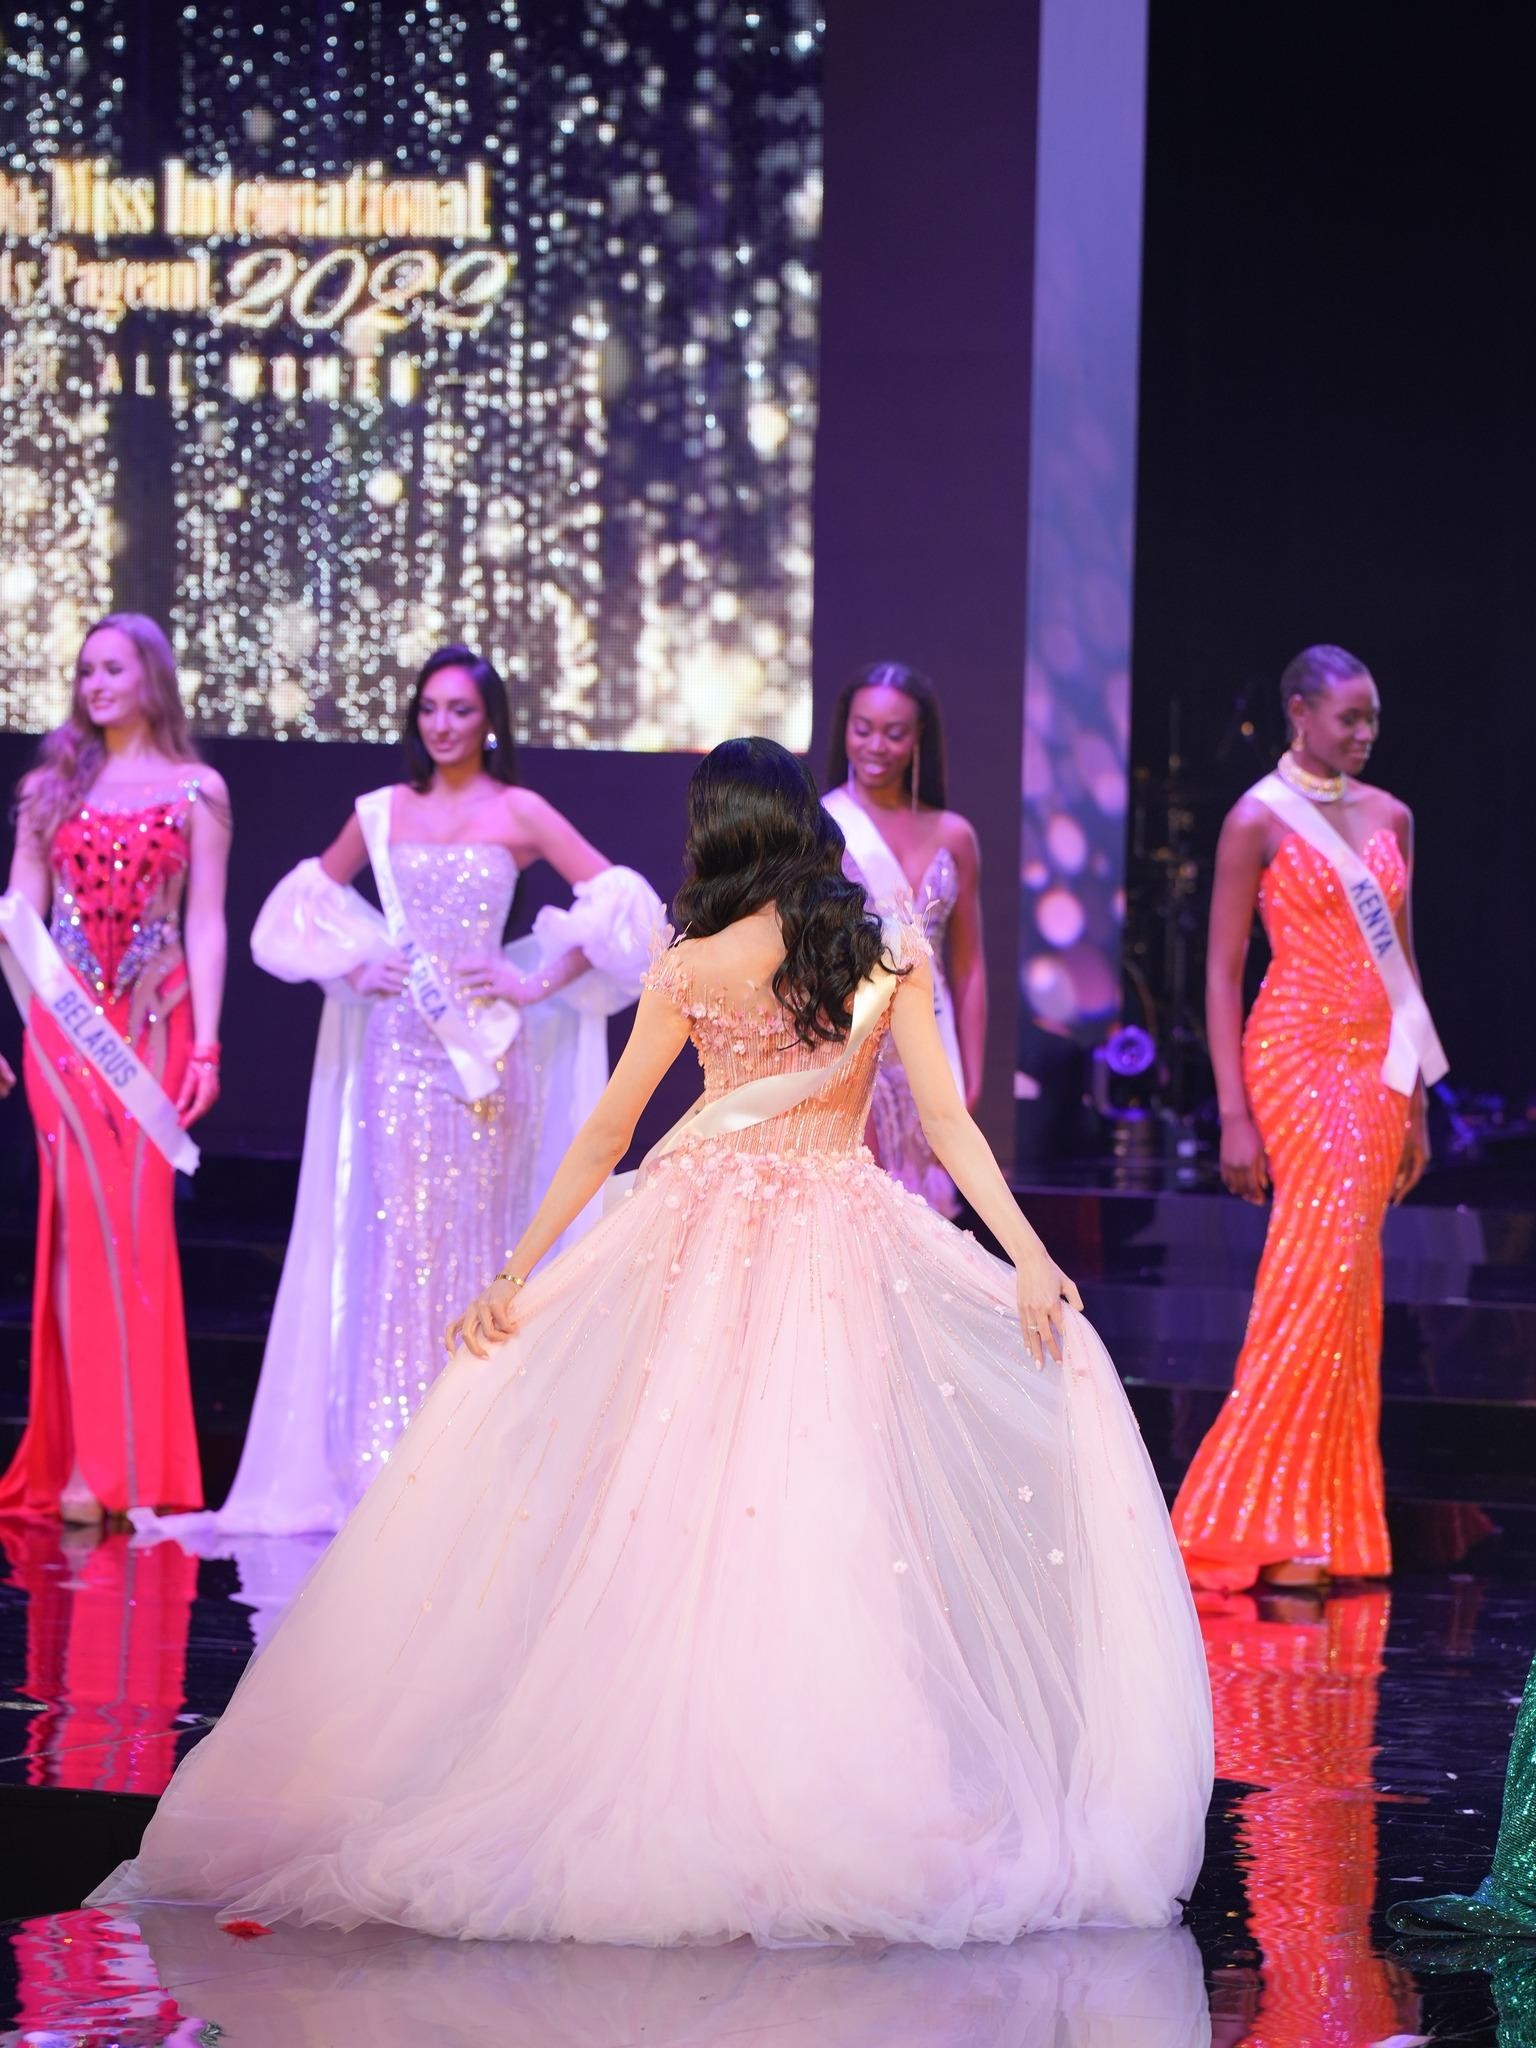 Bán kết Miss Universe: Trang phục dạ hội ấn tượng của Khánh Vân | Vietnam+  (VietnamPlus)